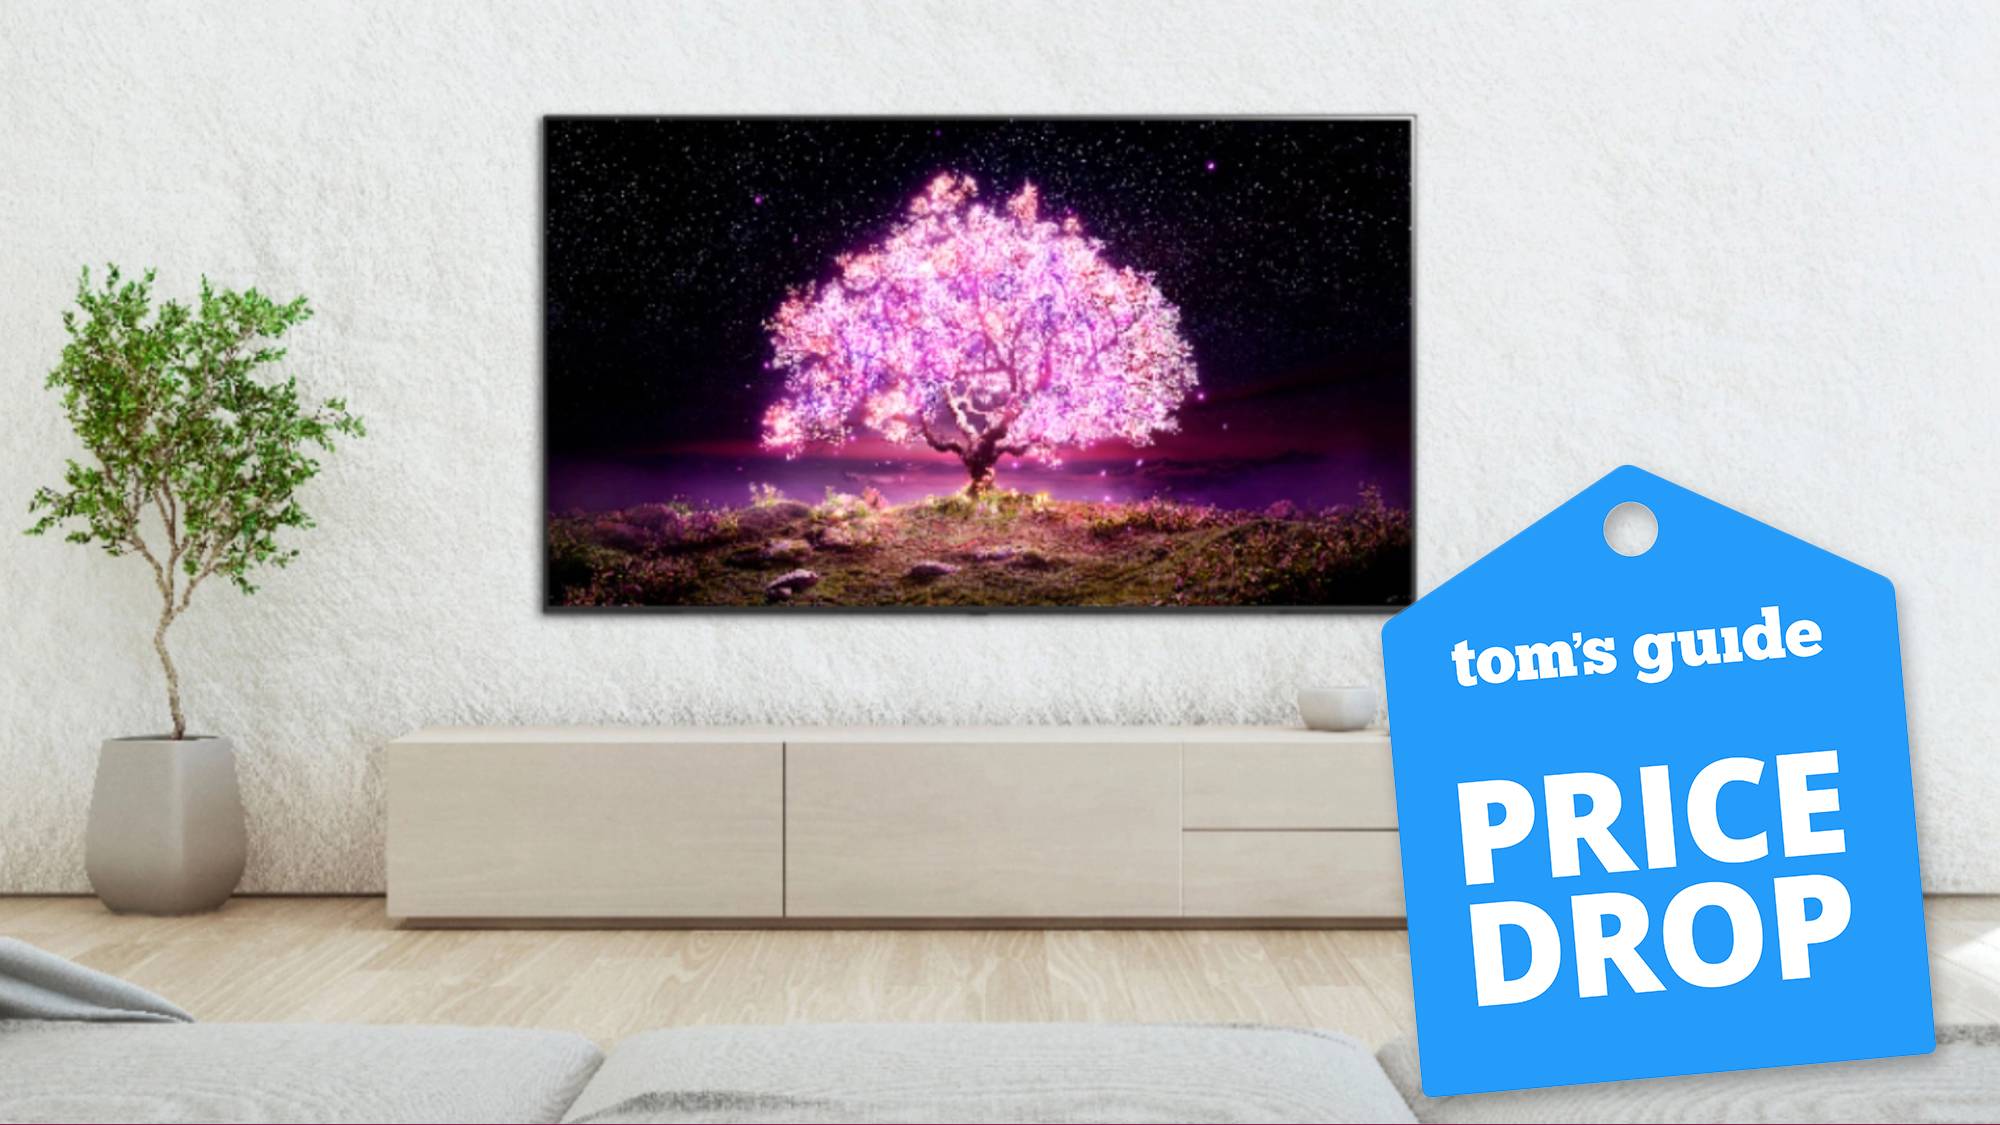 Prime Day TV deals: Should you buy OLED or QLED?